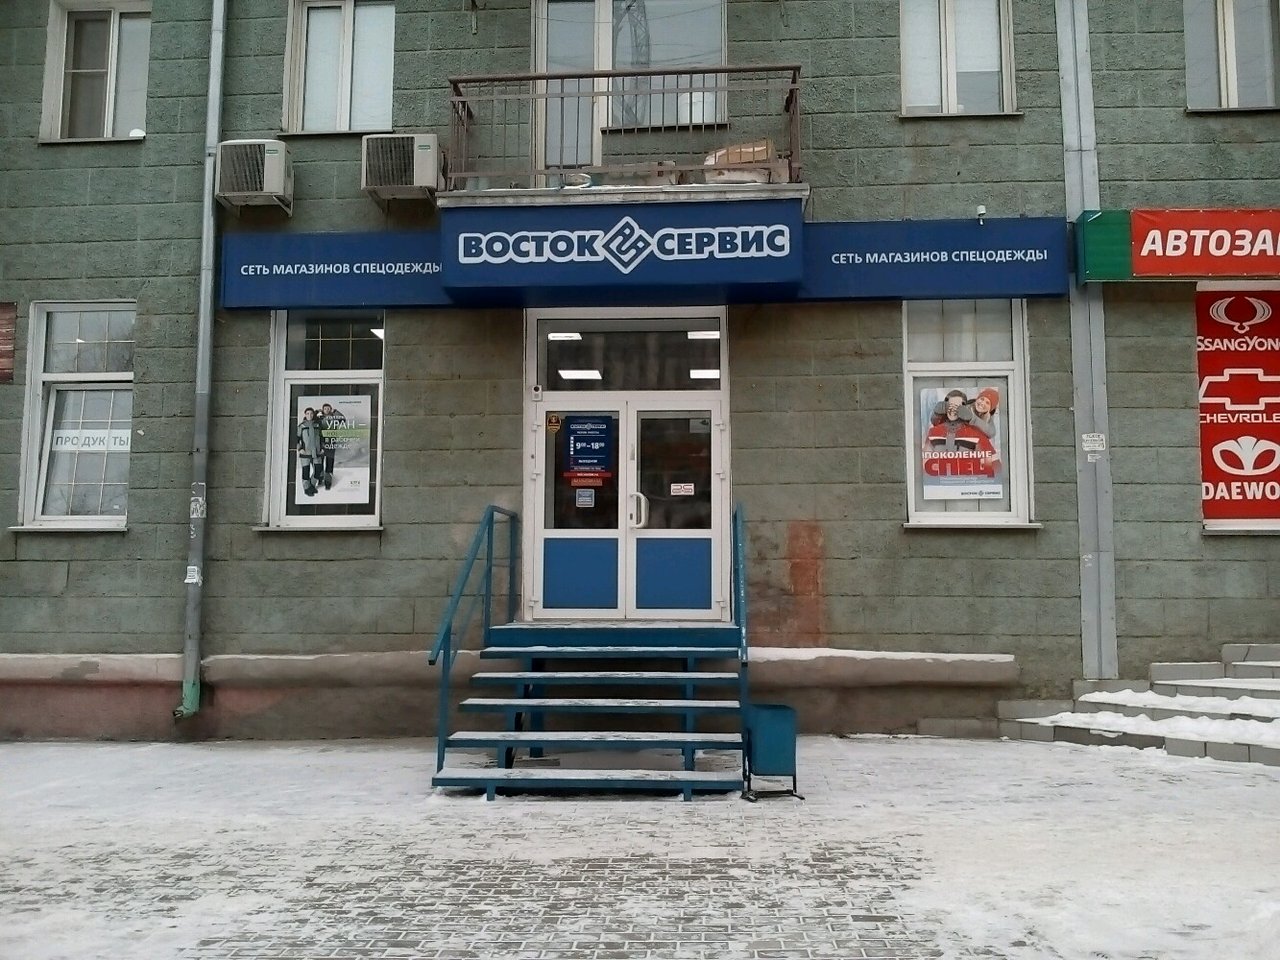 Вход в магазин "Восток Сервис" на Ватутина в Новосибирске